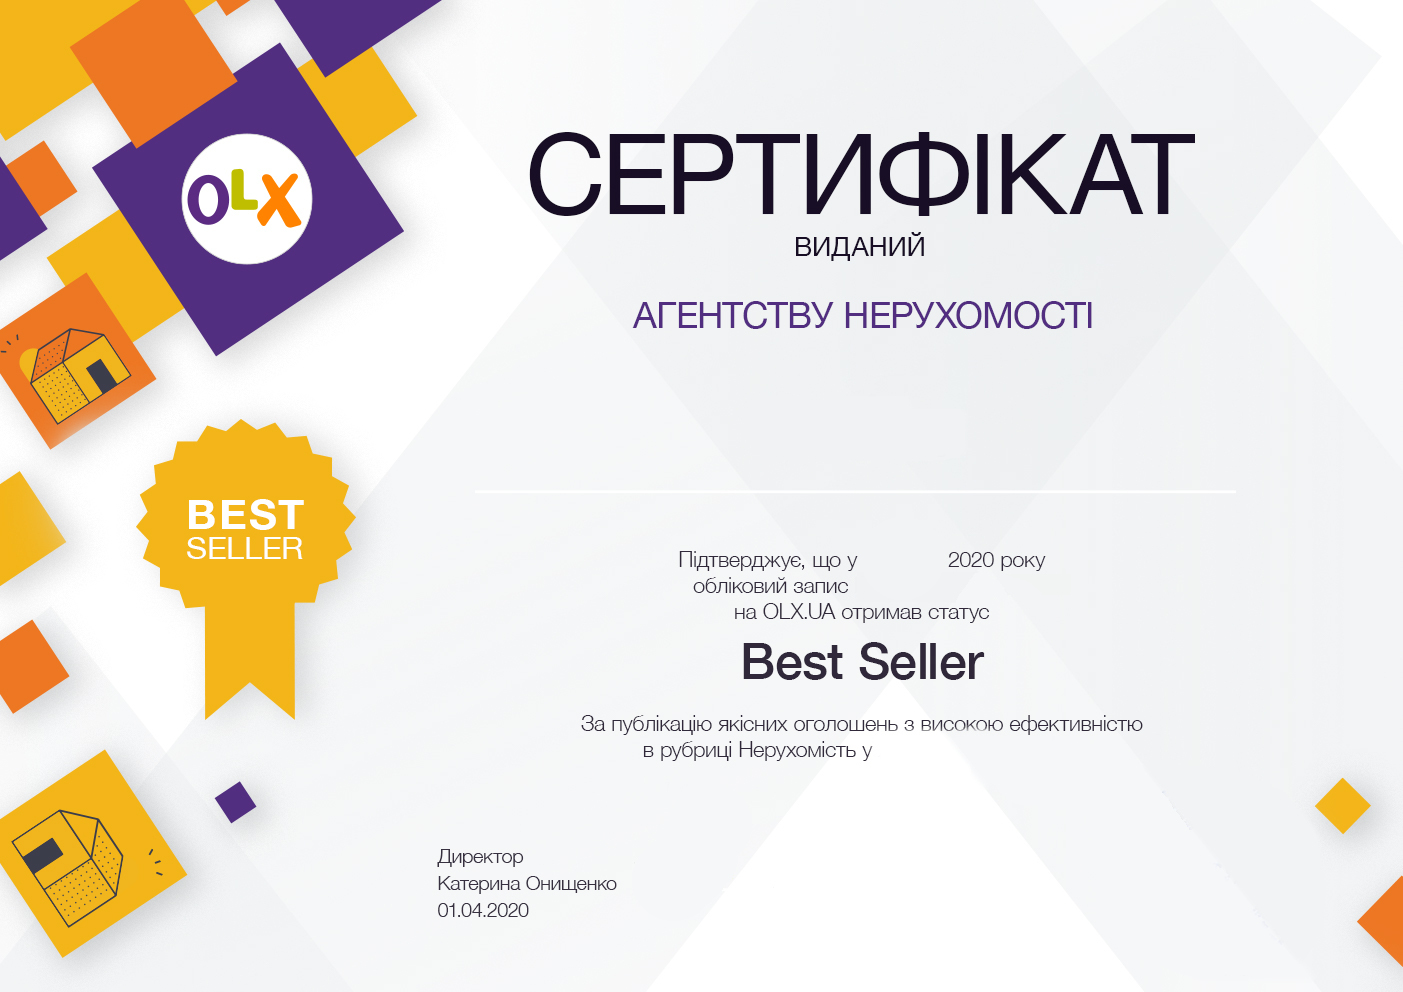 Сертификат Best Seller OLX